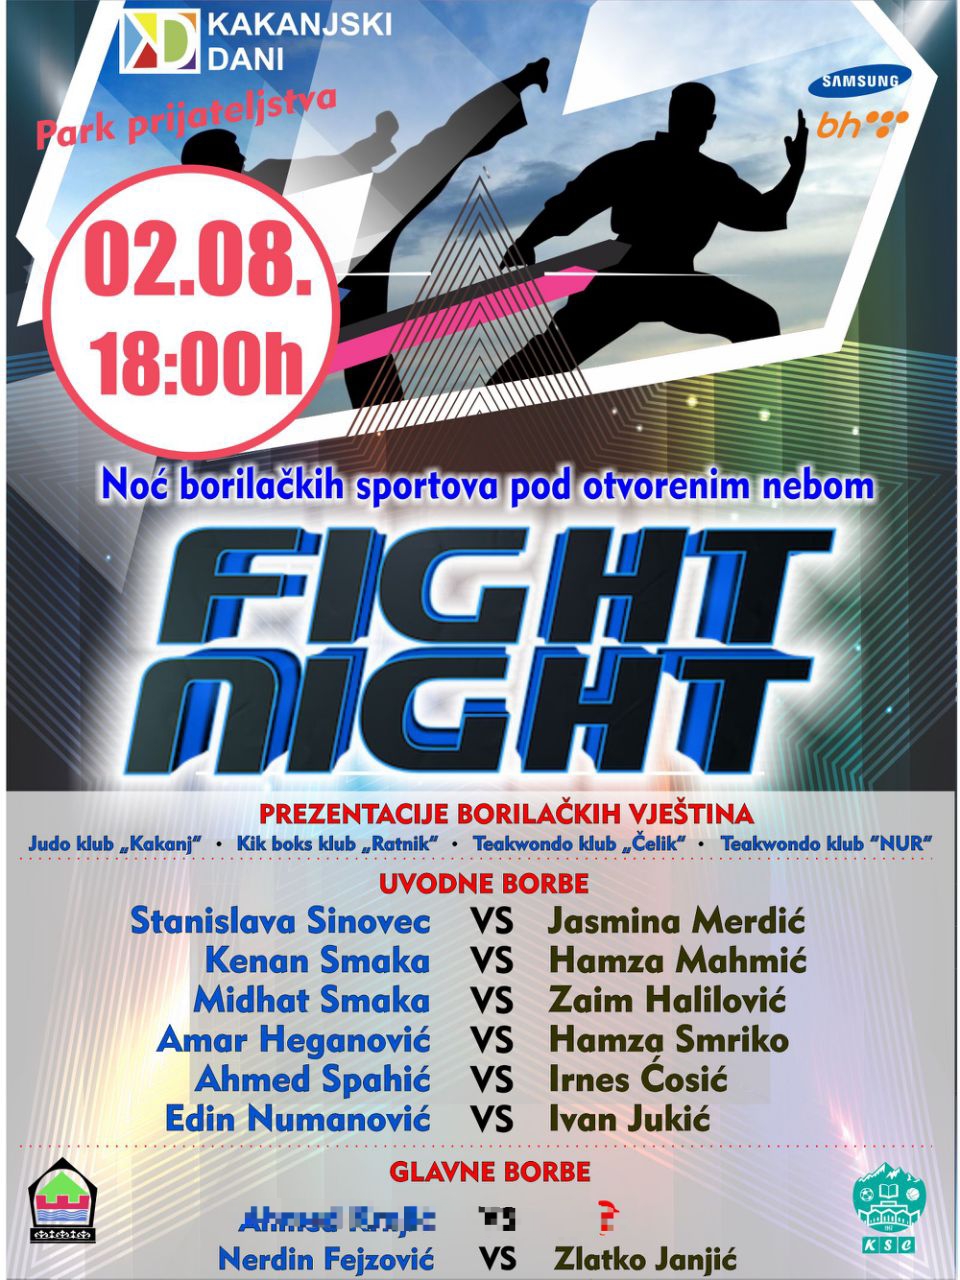 BORILAČKI SPEKTAKL: Noć borilačkih sportova pod otvorenim nebom “FIGHT NIGHT”